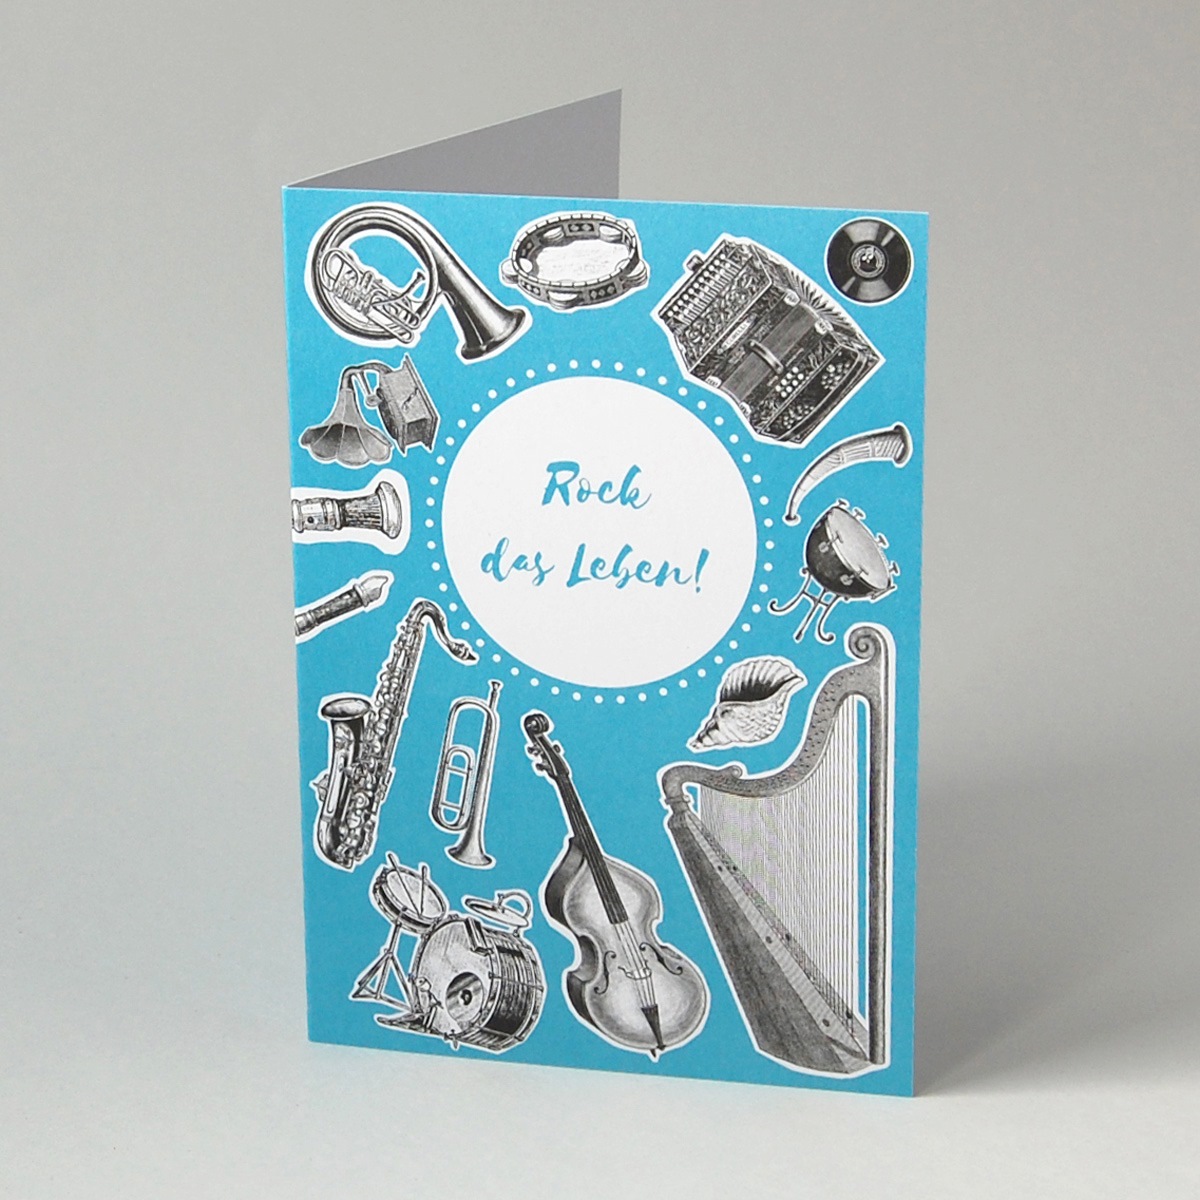 Rock das Leben! Blaue Glückwunschkarten mit Musikinstrumenten